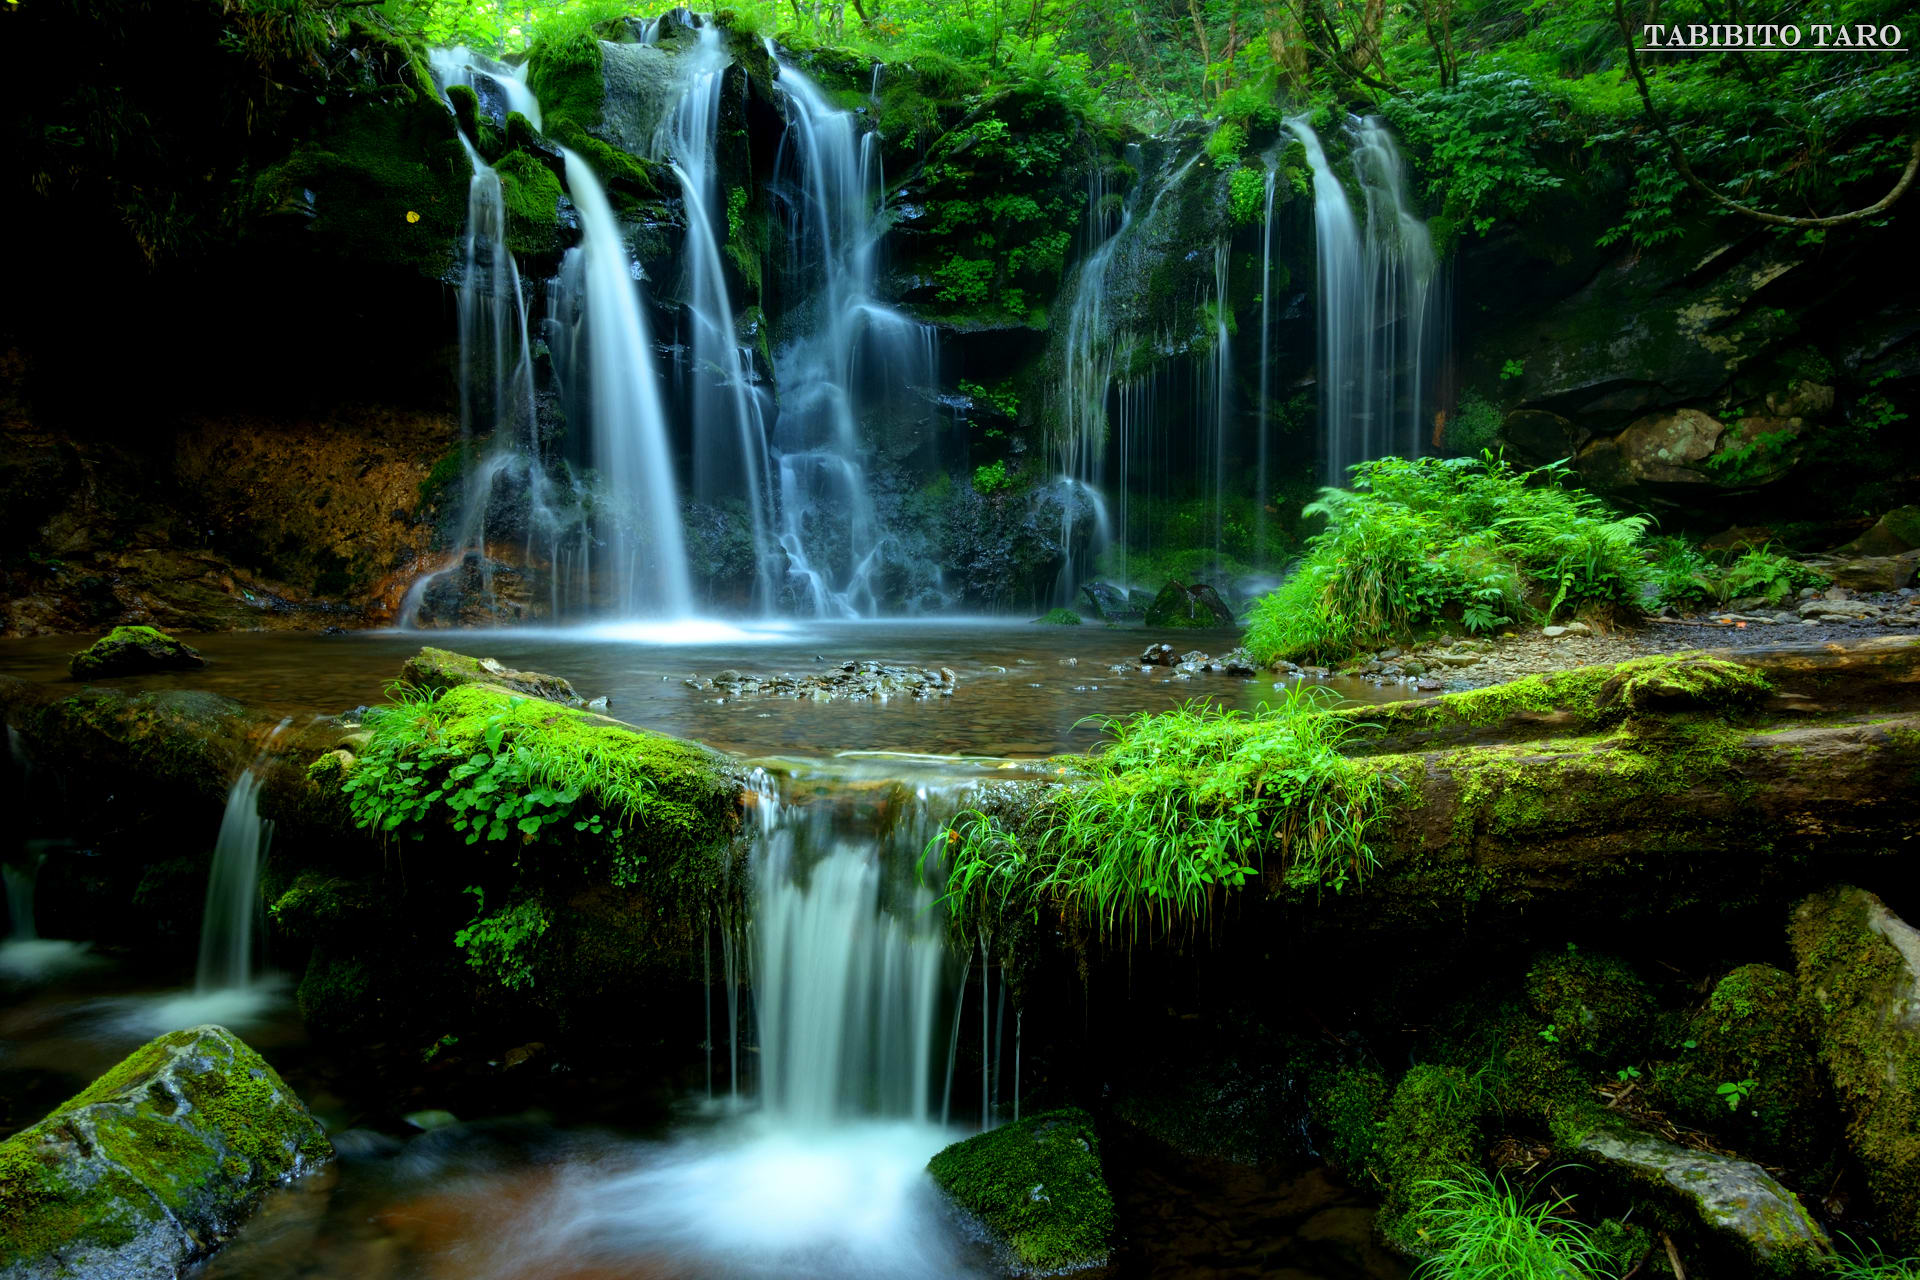 風景写真 自然 Vol 1 新温泉町 猿壺の滝 旅人太郎の写真館